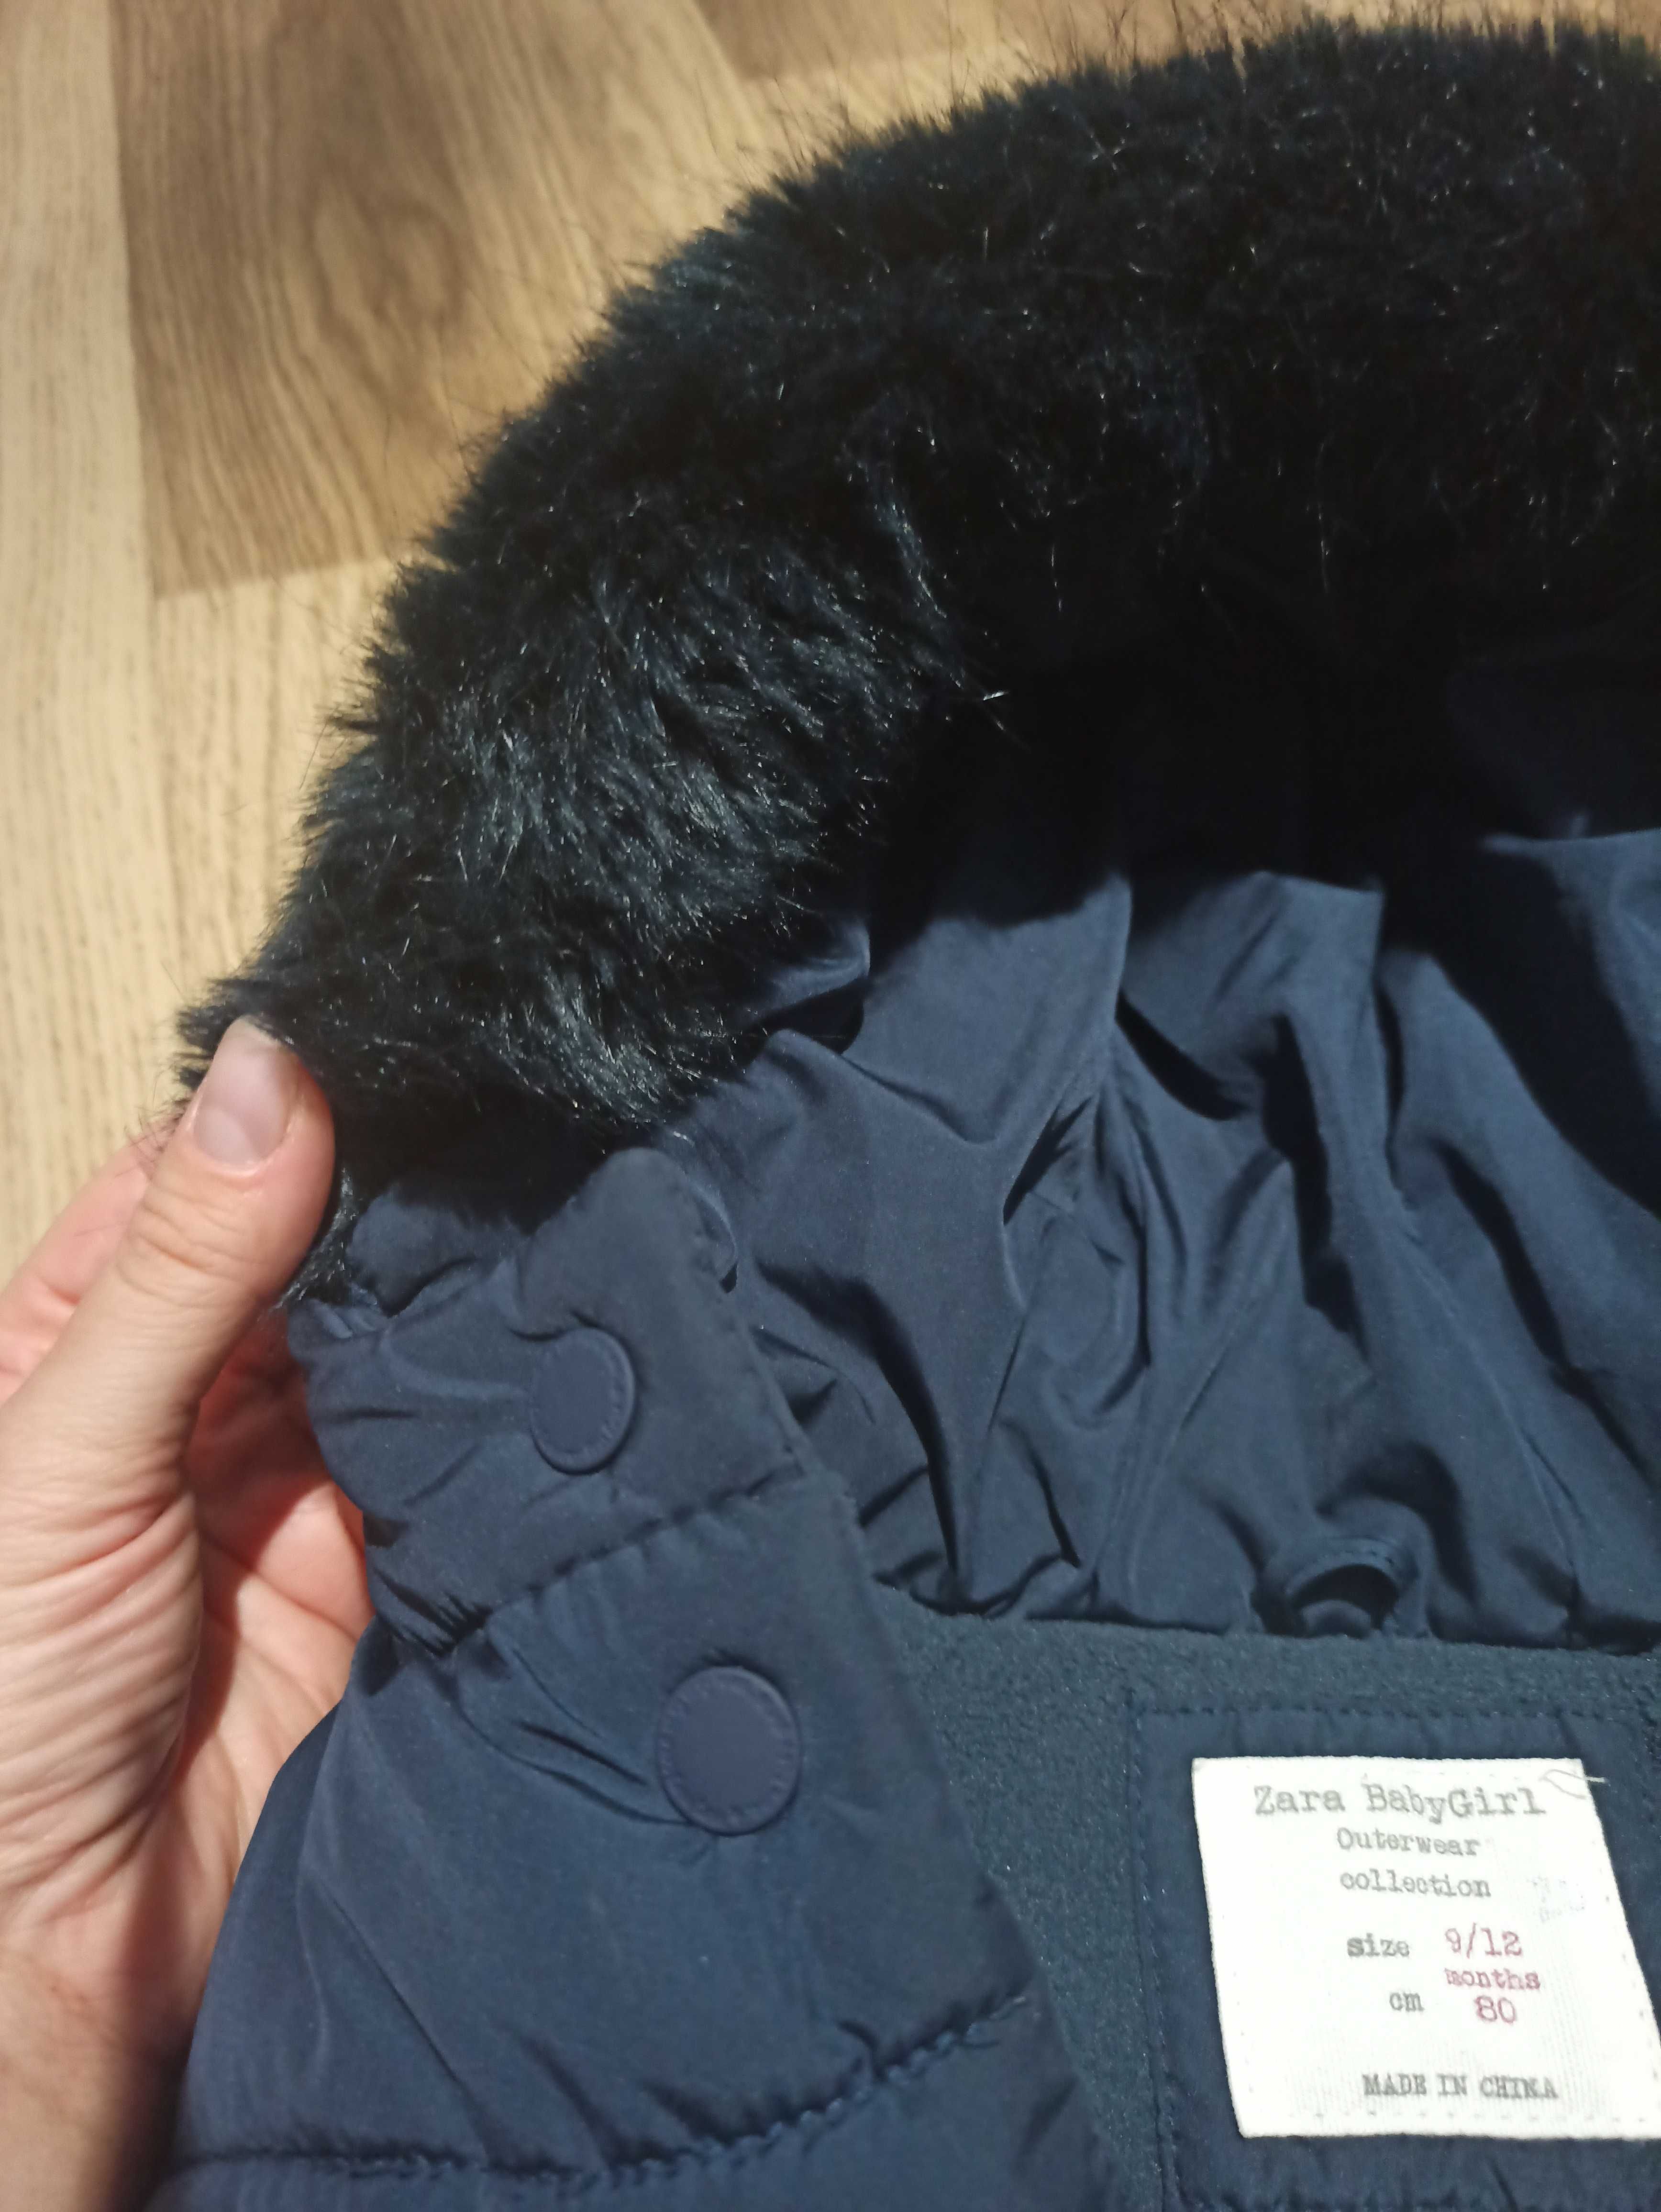 Niemowlęca kurtka zimowa Zara - rozmiar 80